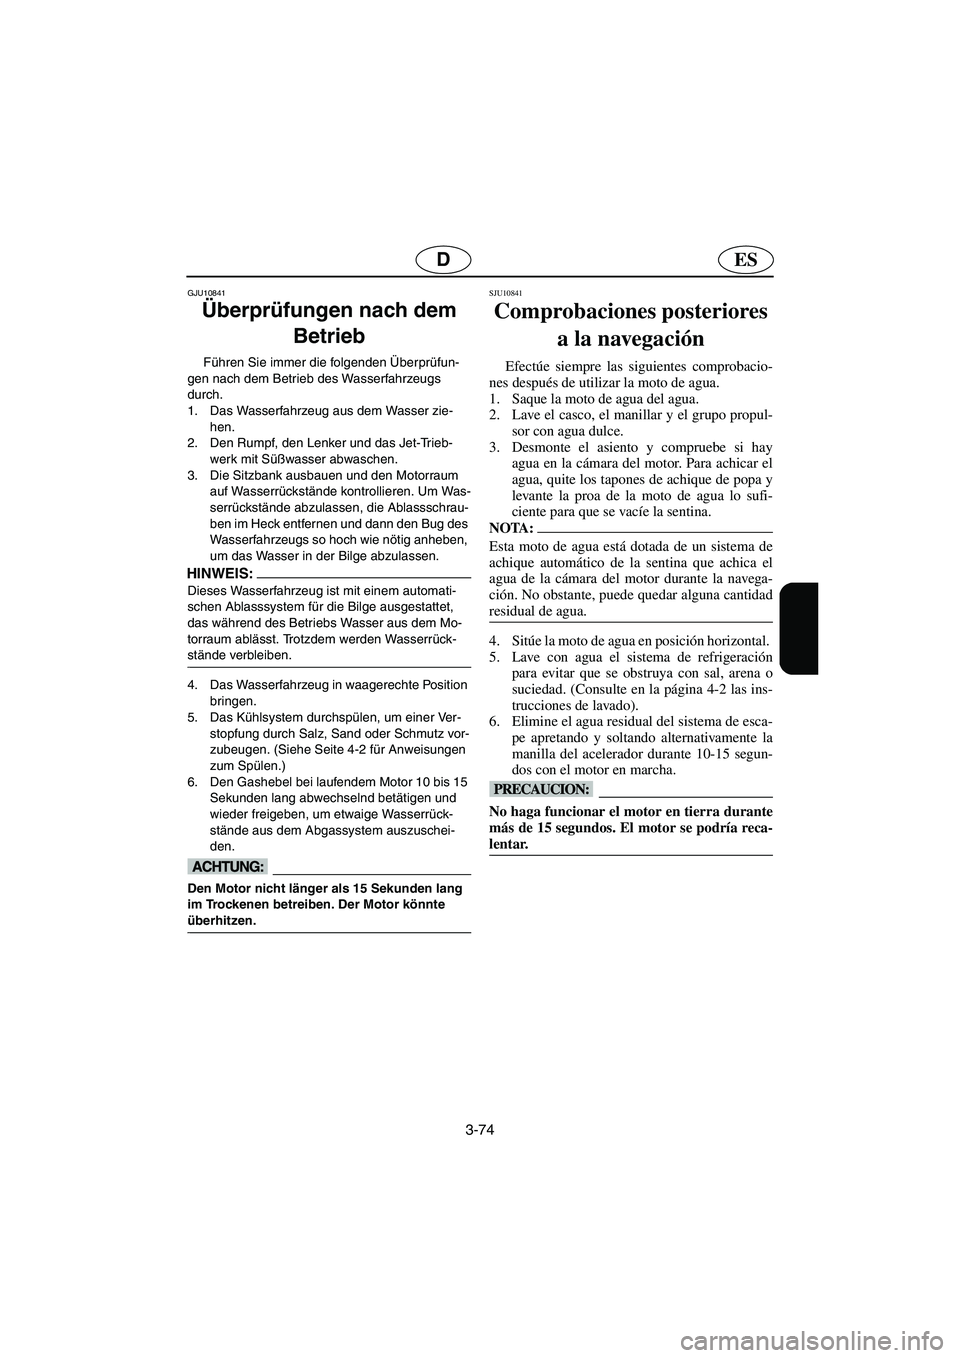 YAMAHA VX SPORT 2006  Manuale de Empleo (in Spanish) 3-74
ESD
GJU10841
Überprüfungen nach dem 
Betrieb 
Führen Sie immer die folgenden Überprüfun-
gen nach dem Betrieb des Wasserfahrzeugs 
durch.
1. Das Wasserfahrzeug aus dem Wasser zie-
hen. 
2. D